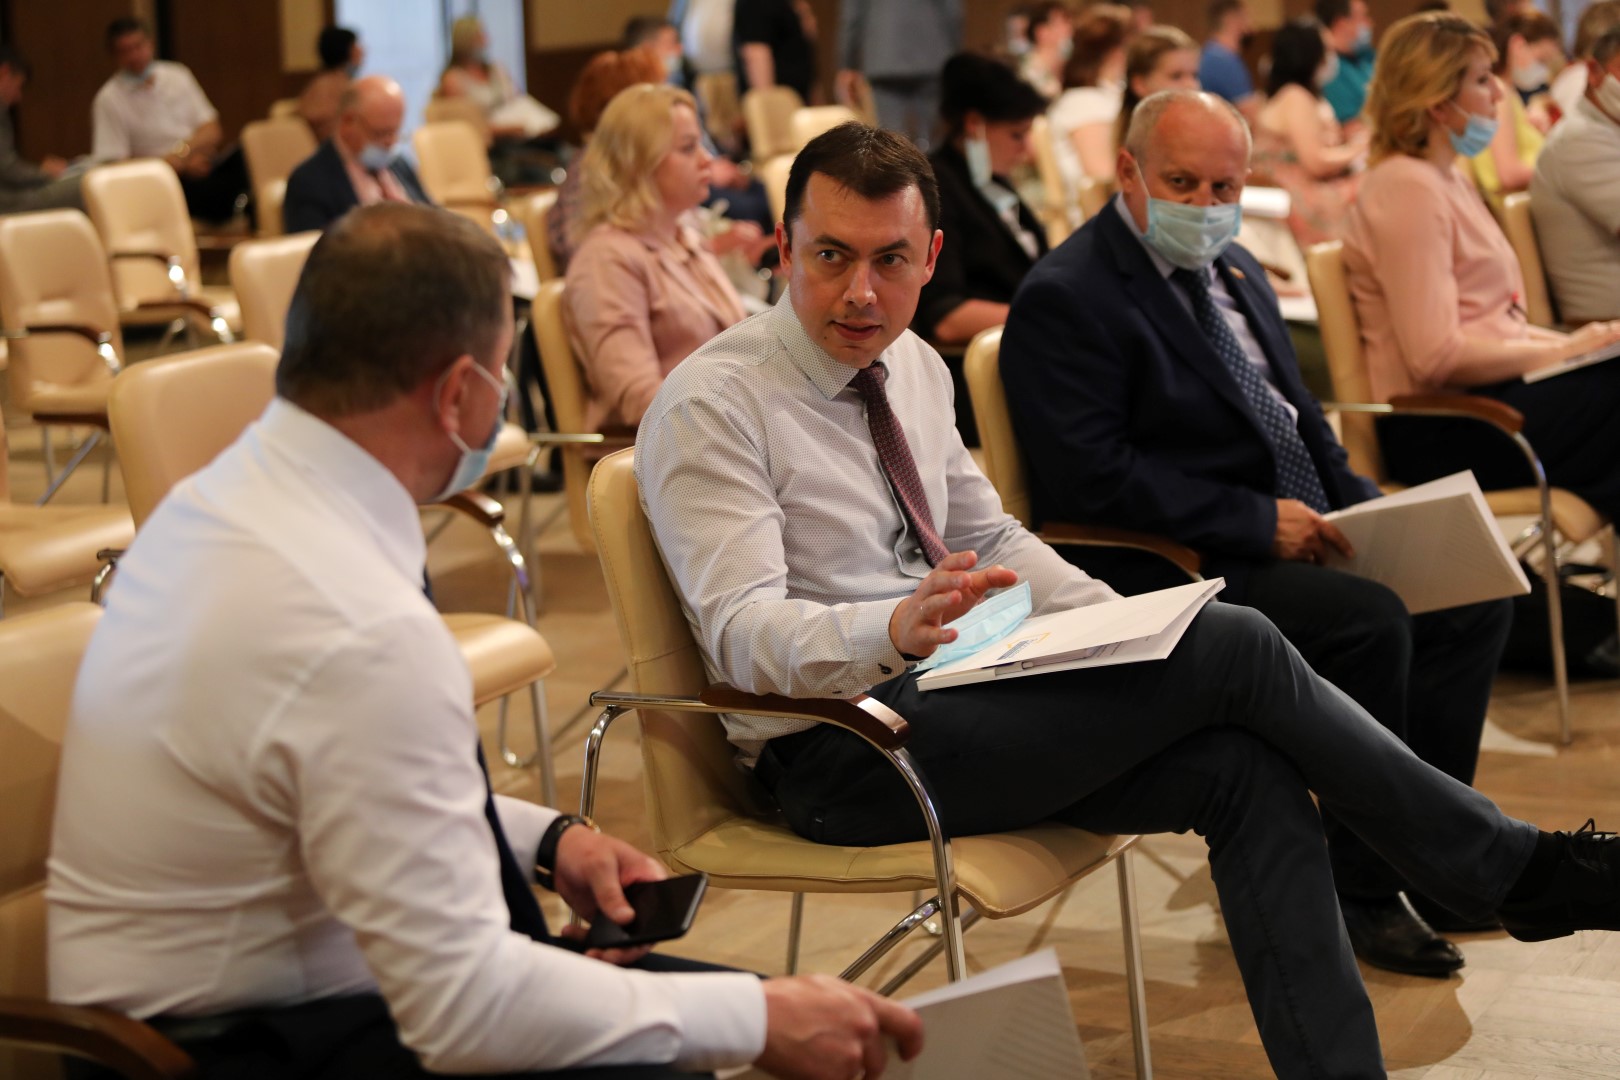 Дмитрий Миронов провел общественное обсуждение стратегии социально-экономического развития Ярославской области